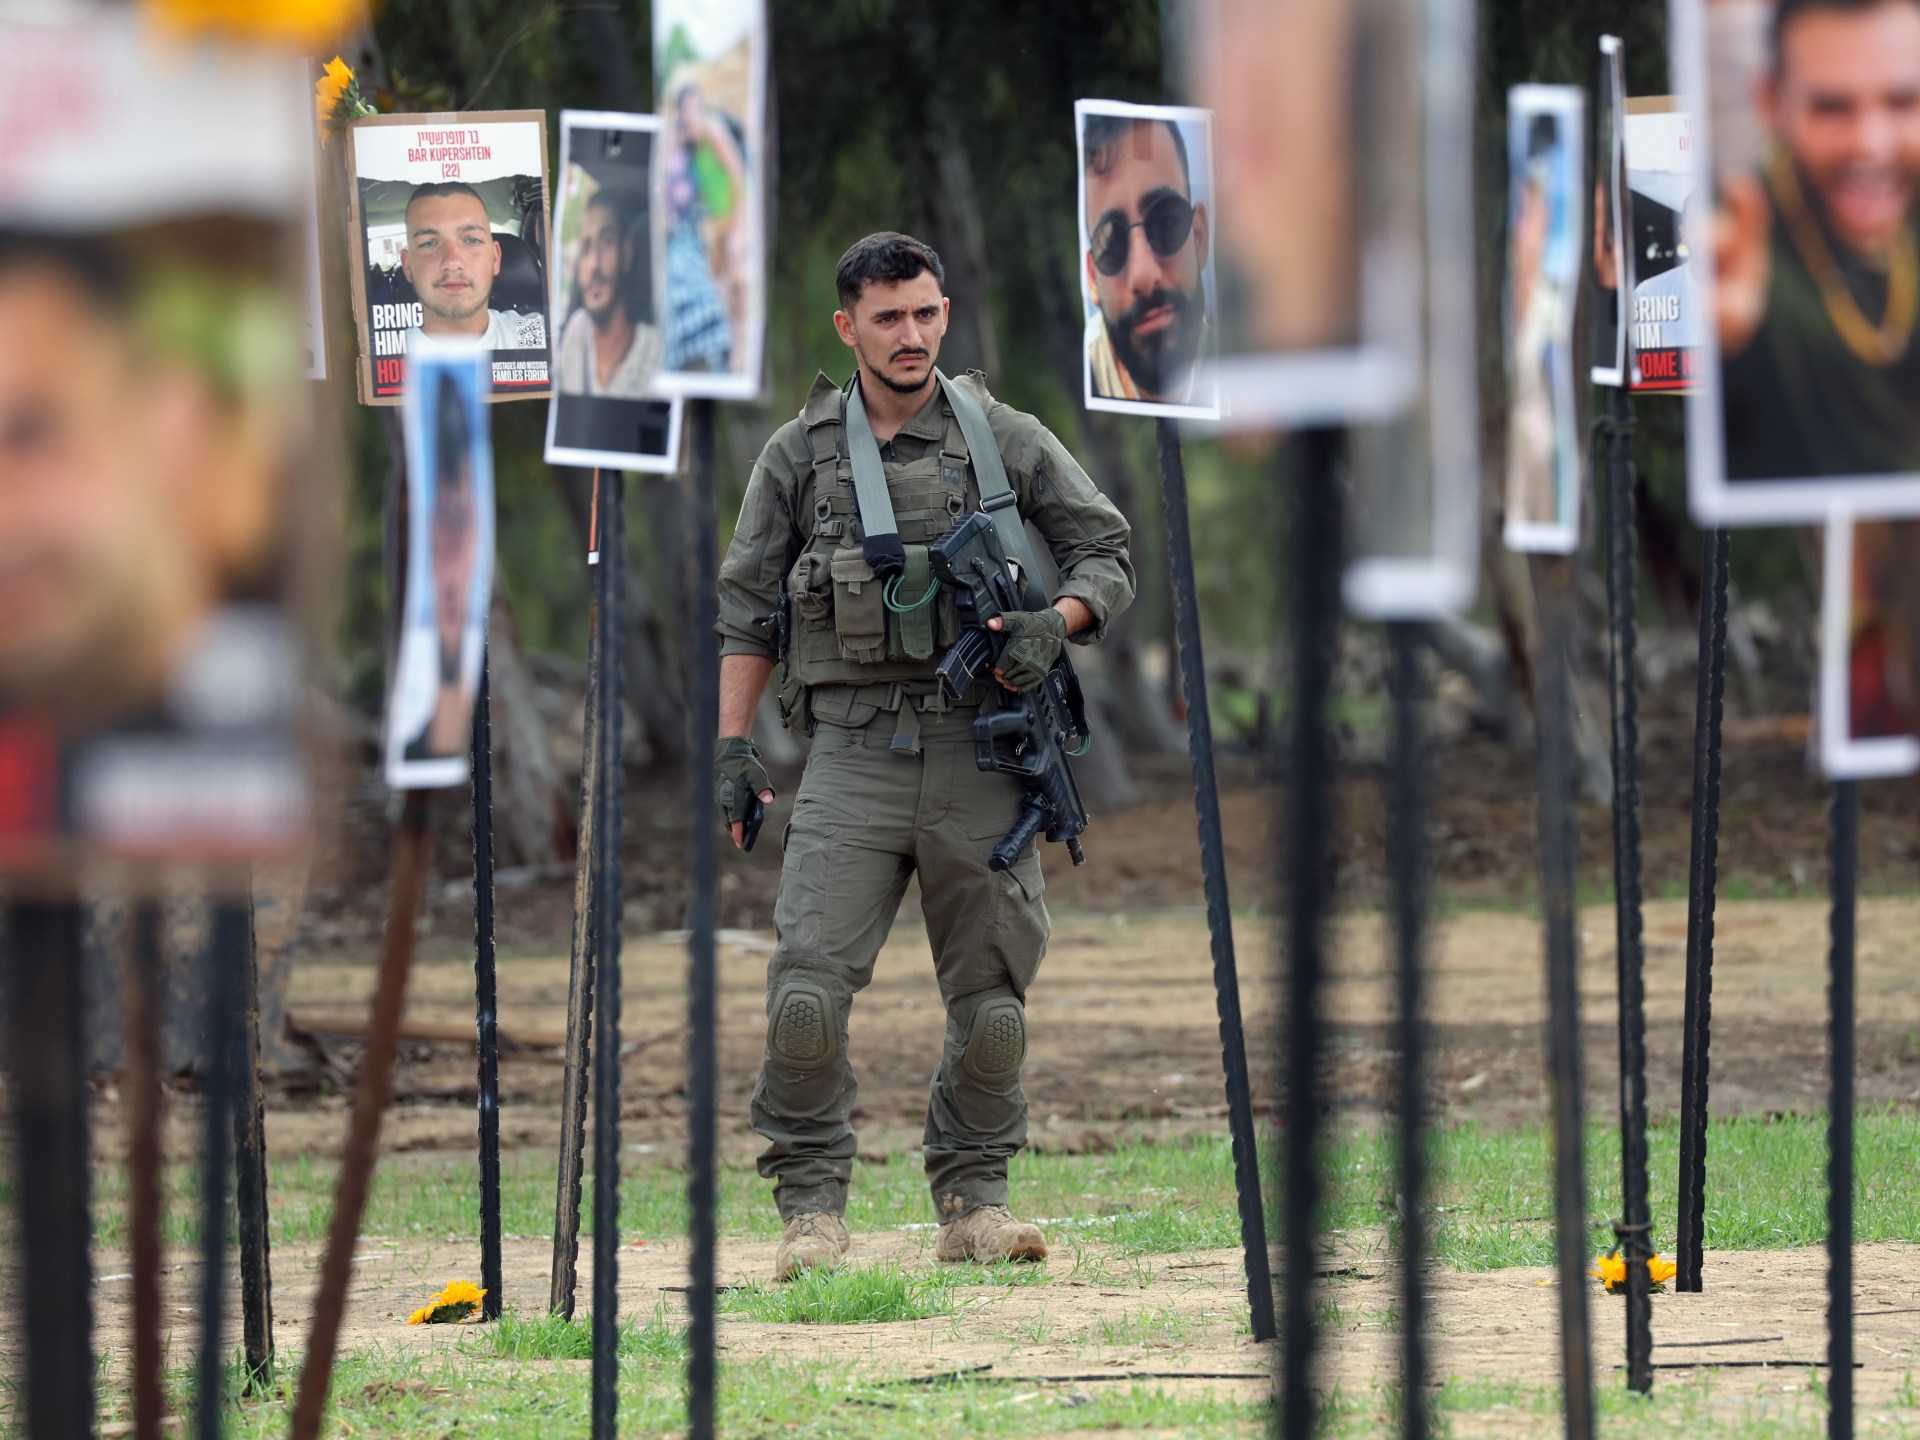 ما الذي دفع 50 إسرائيليا إلى الانتحار بعد نجاتهم من حفل نوفا؟